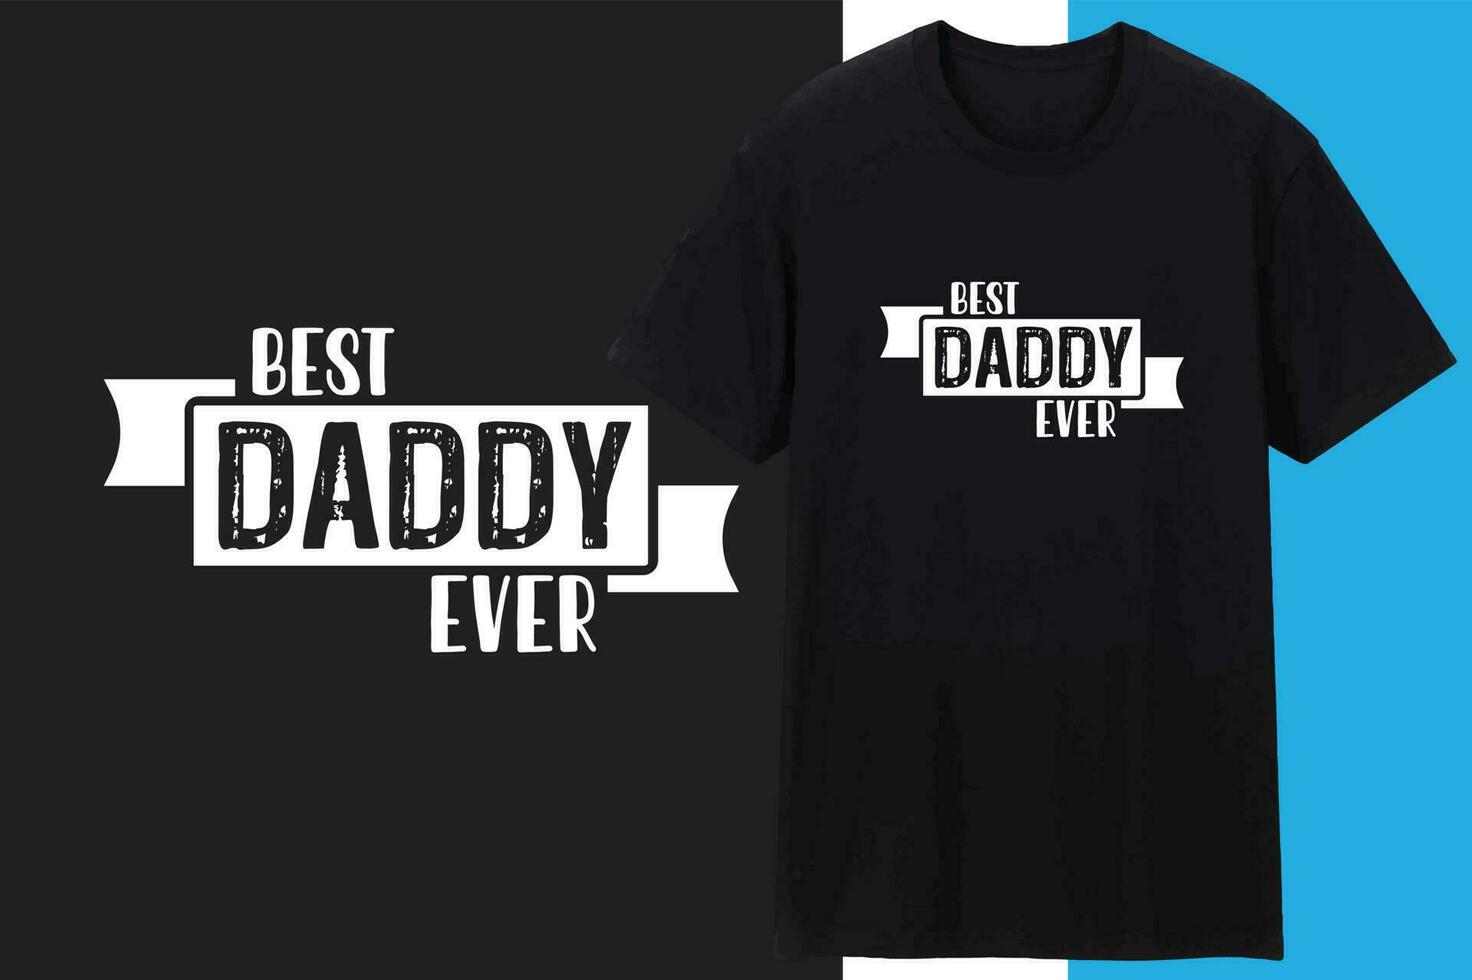 Vater oder Papa t Hemd Design , Typografie Design vektor